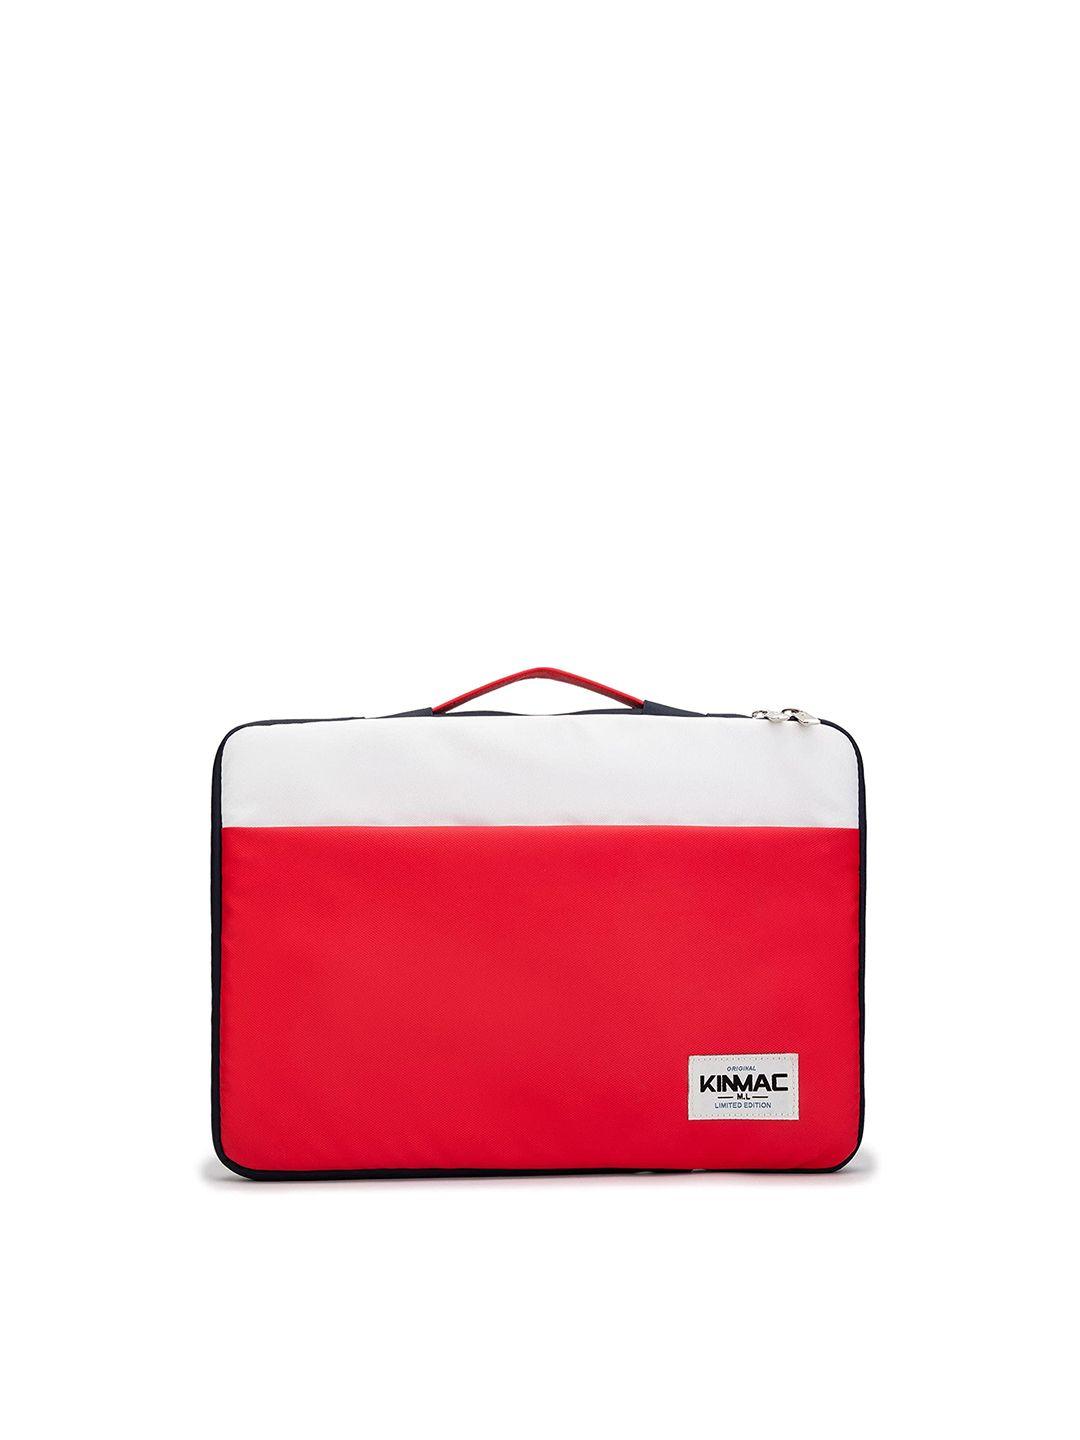 red lemon unisex red & white colourblocked laptop bag